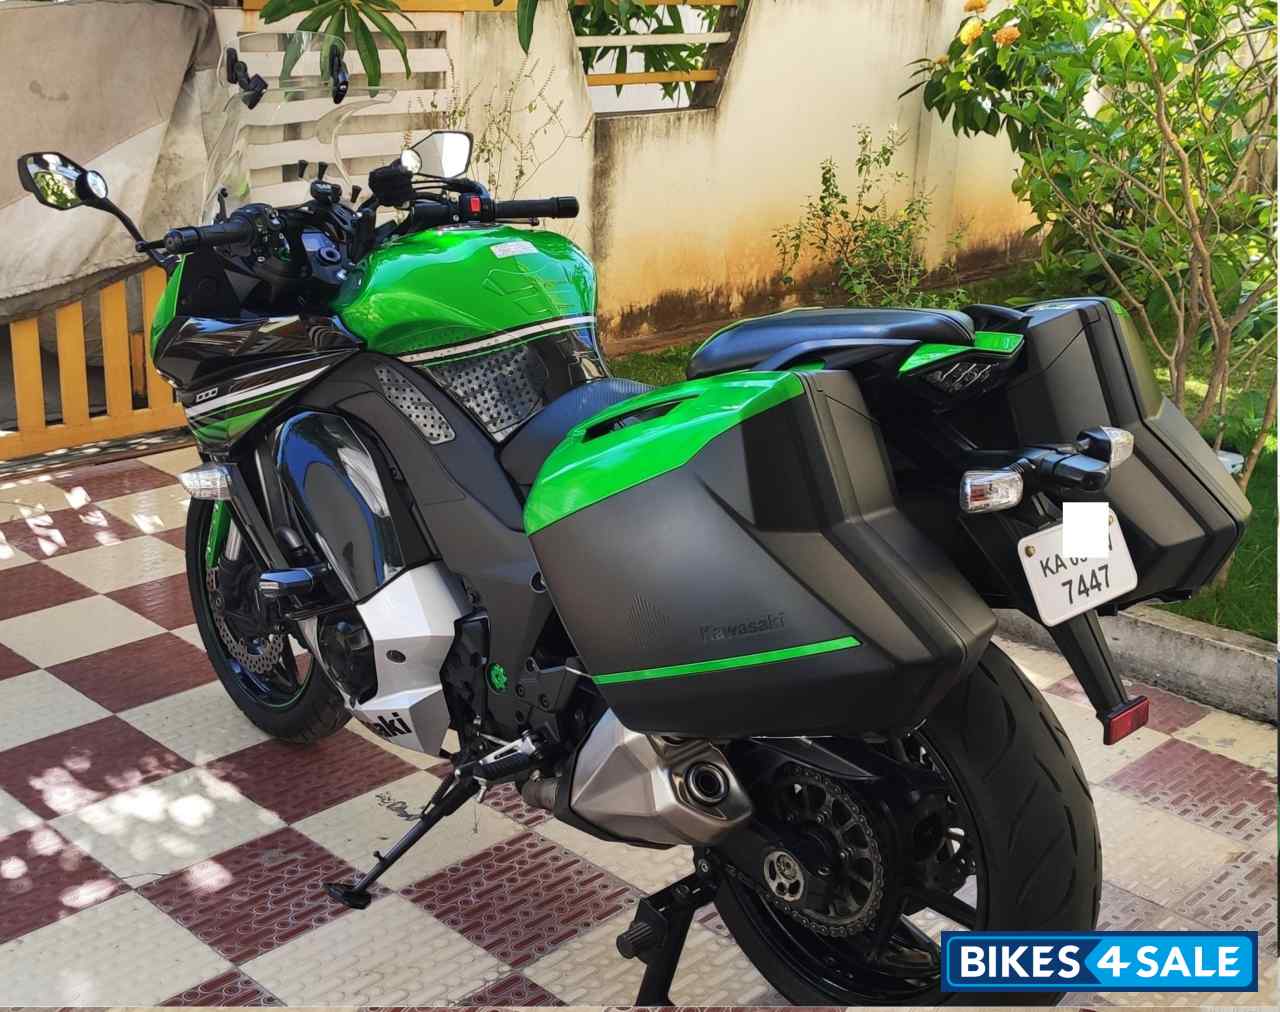 Green Kawasaki Ninja 1000